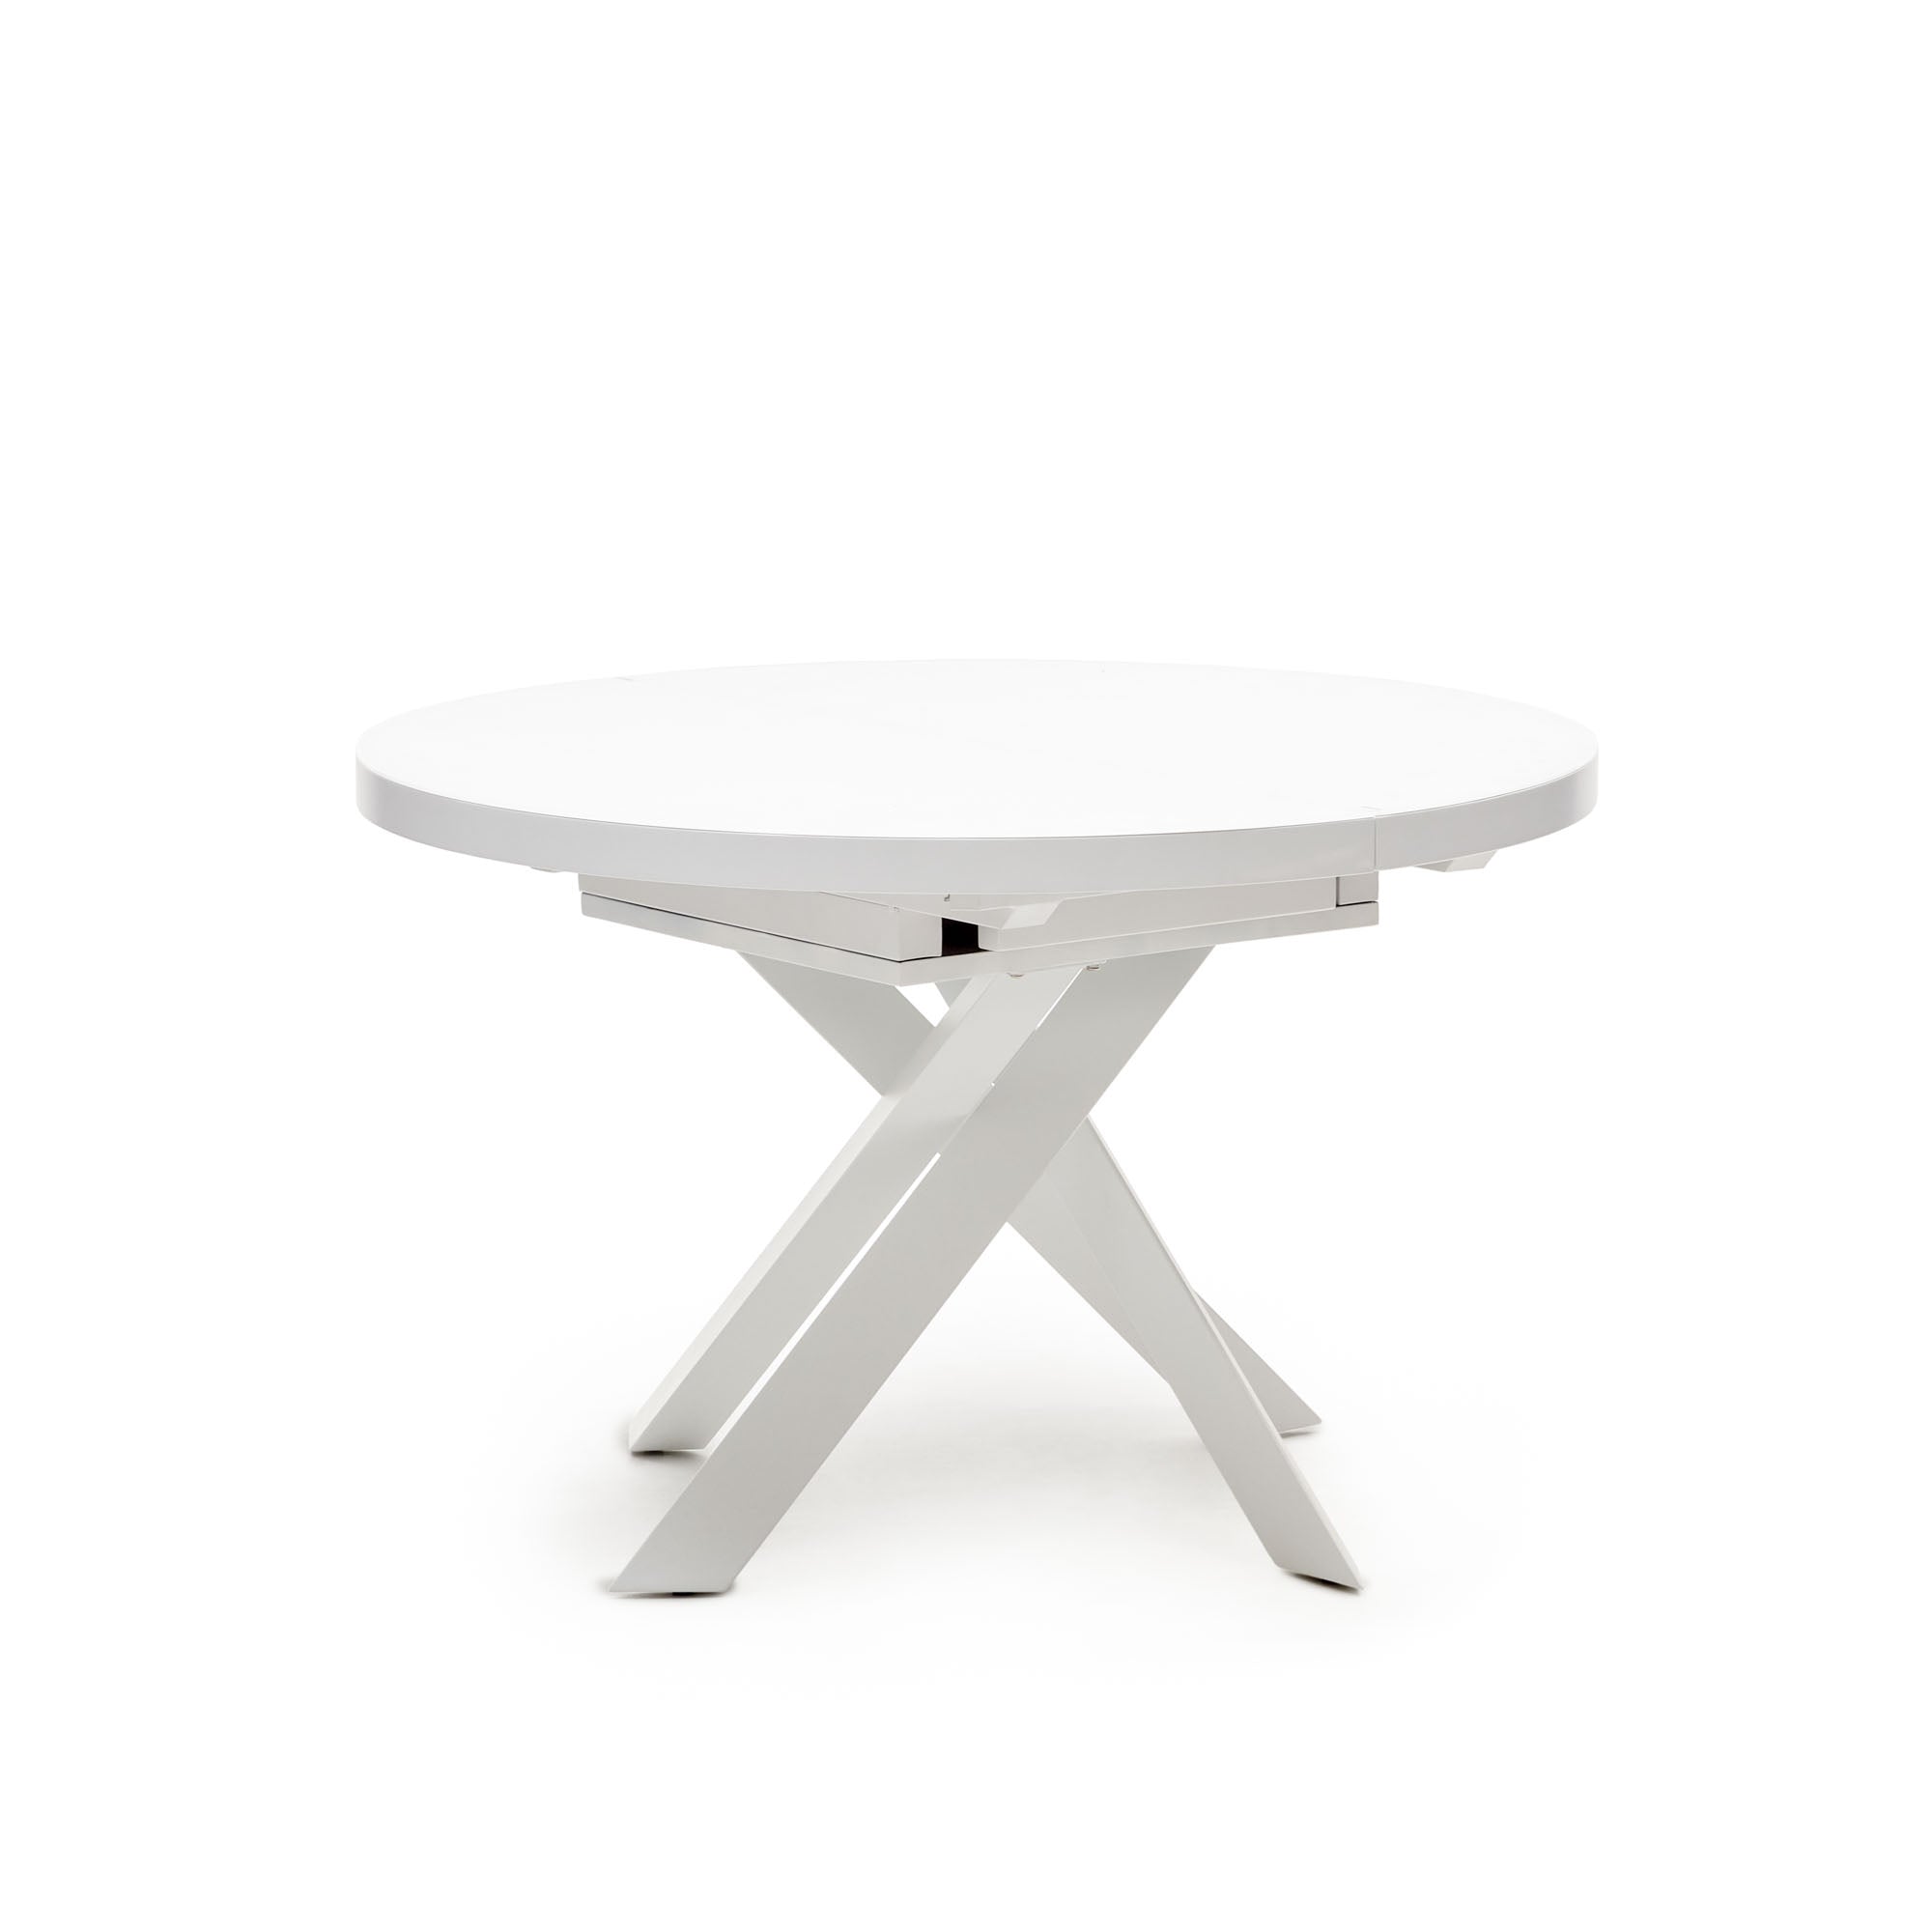 Vashti kihúzható kerek asztal üvegből és MDF-ből, acél lábakkal, fehér színben, Ø 120(160)x120cm